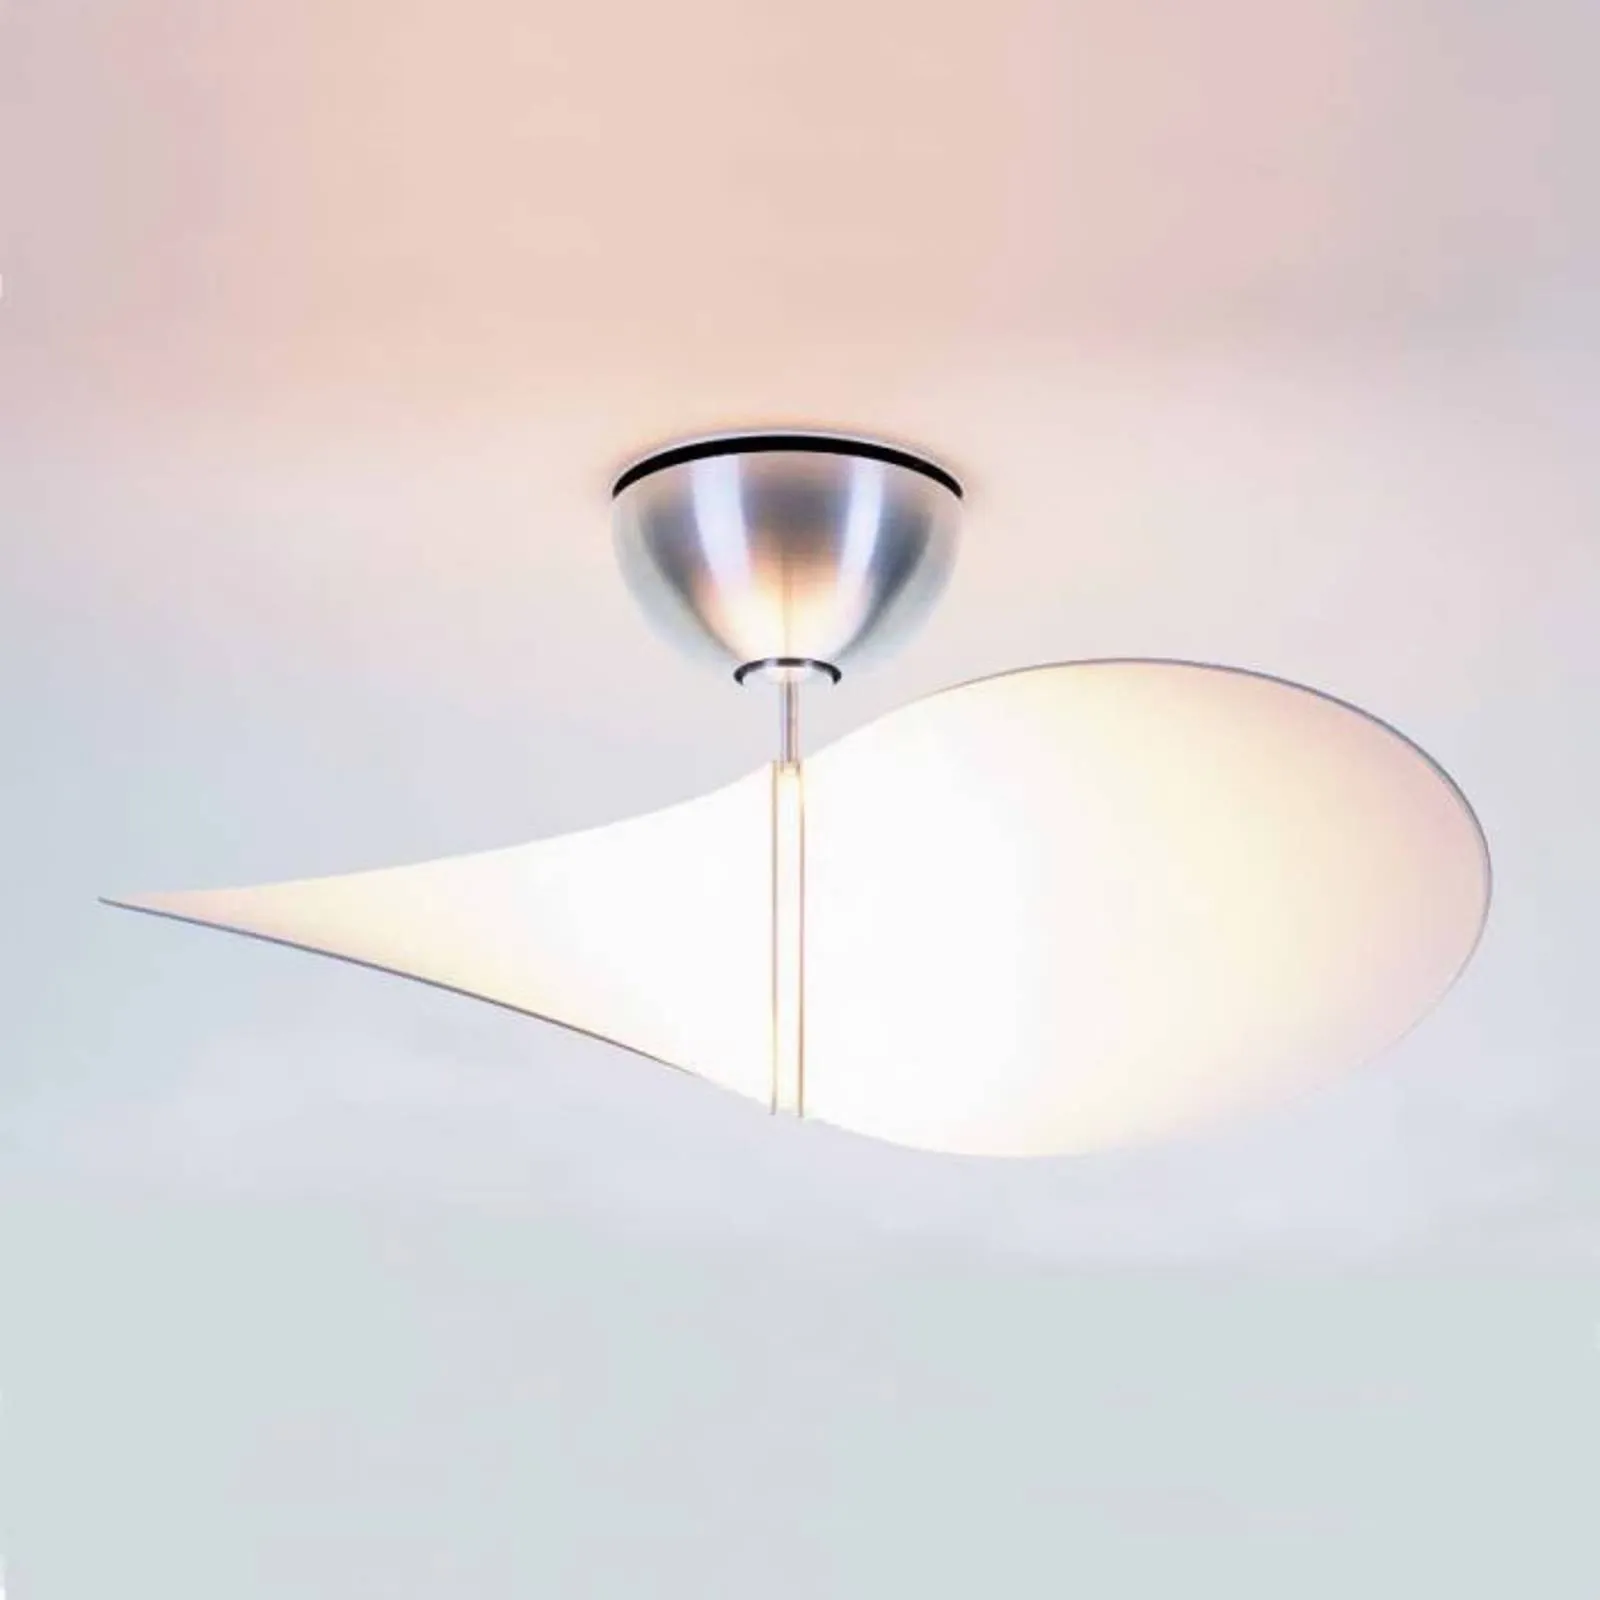 serien.lighting Propeller ceiling fan